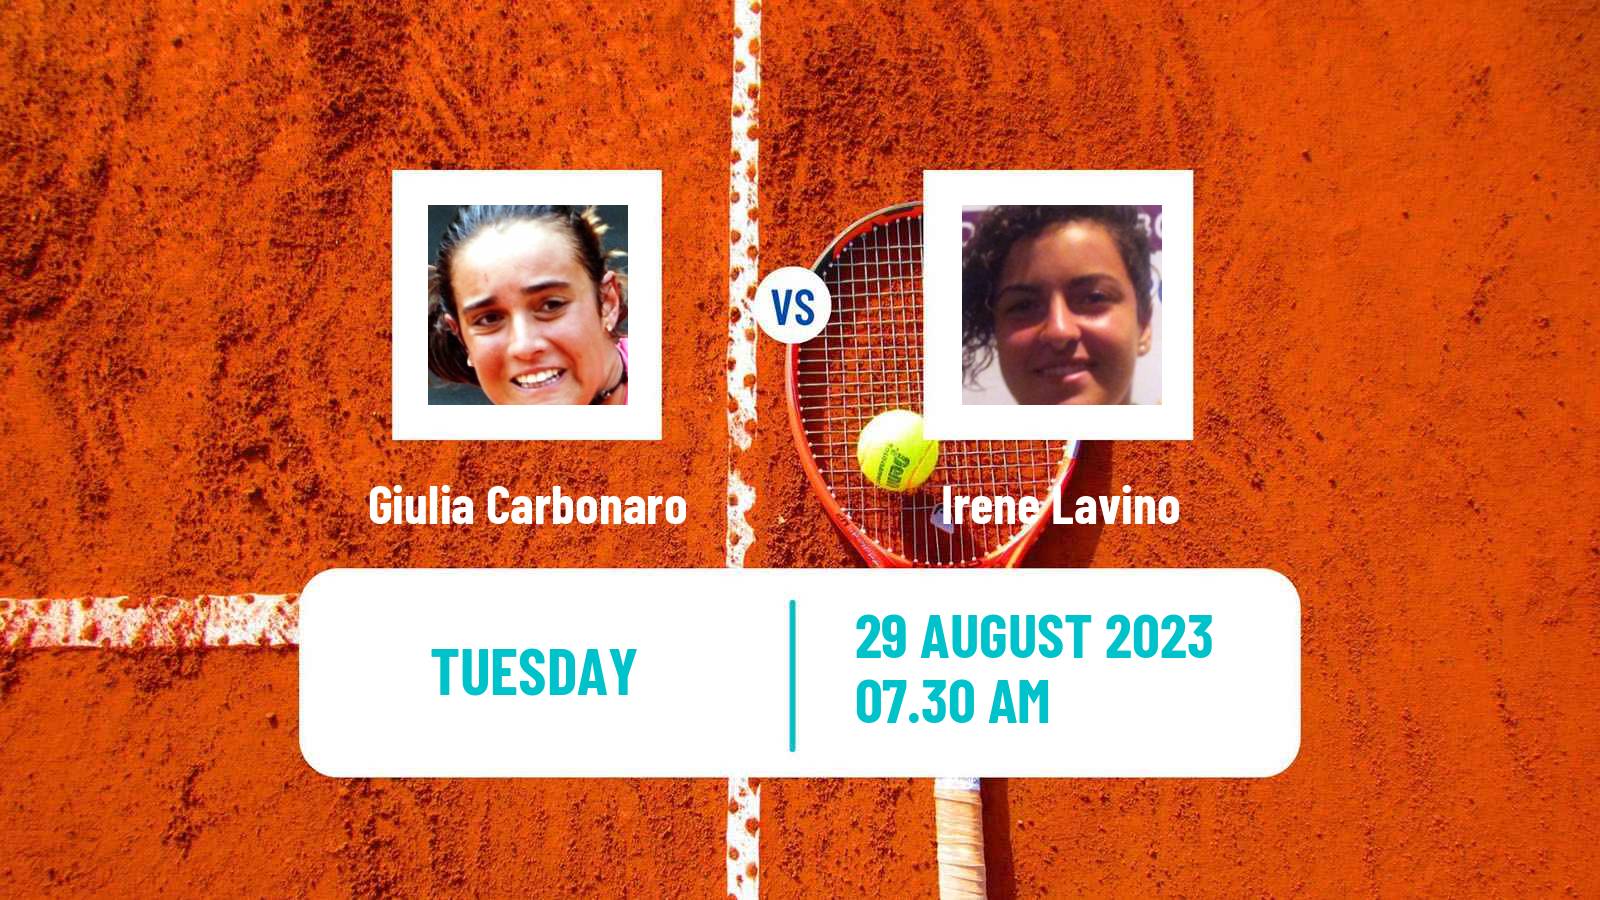 Tennis ITF W15 Brasov 2 Women Giulia Carbonaro - Irene Lavino